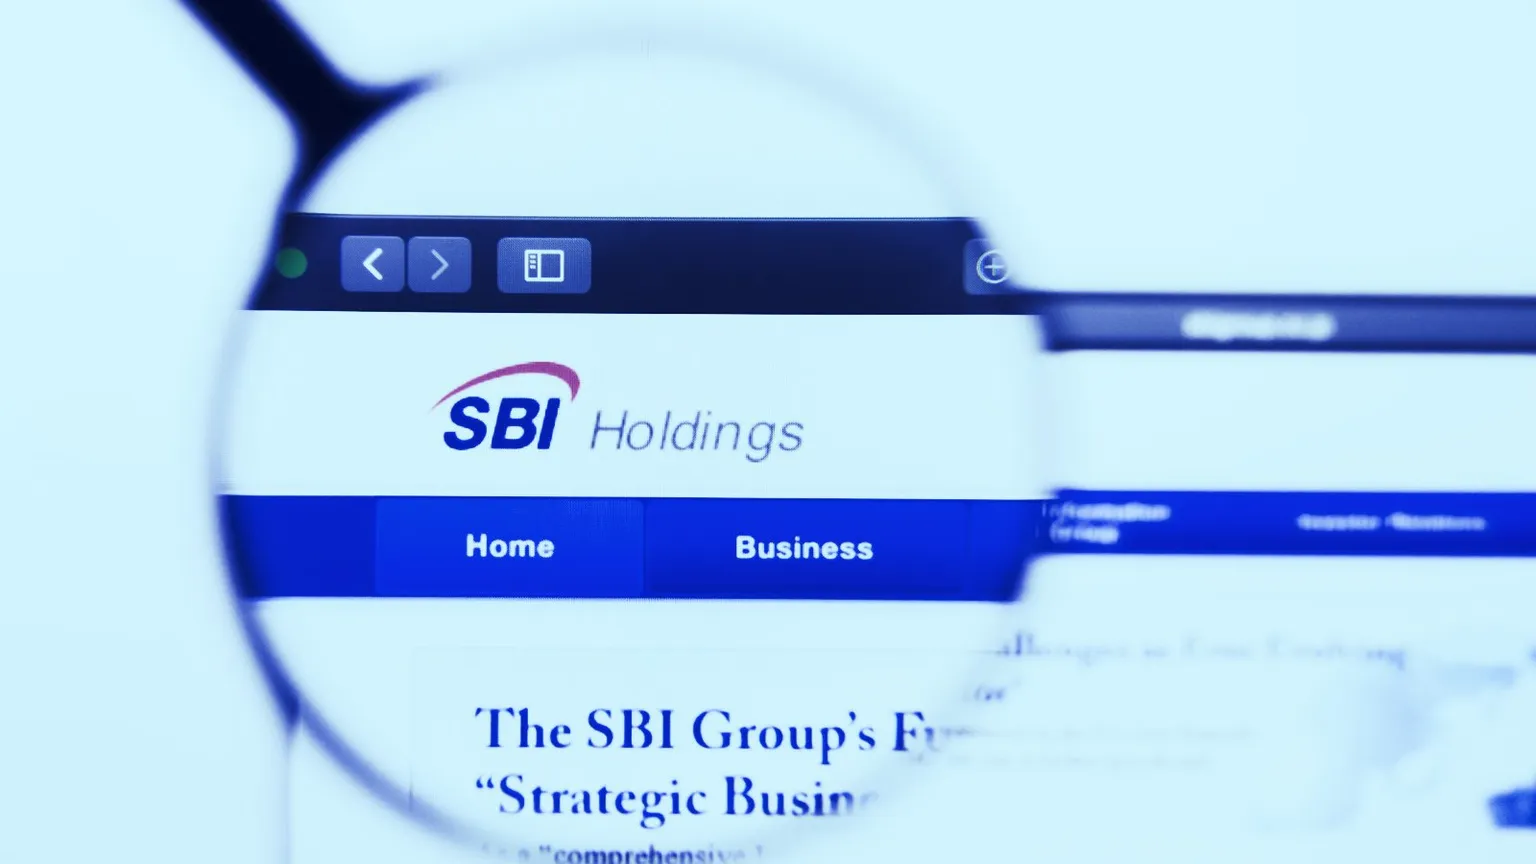 SBI Holdings news. Image: Shutterstock